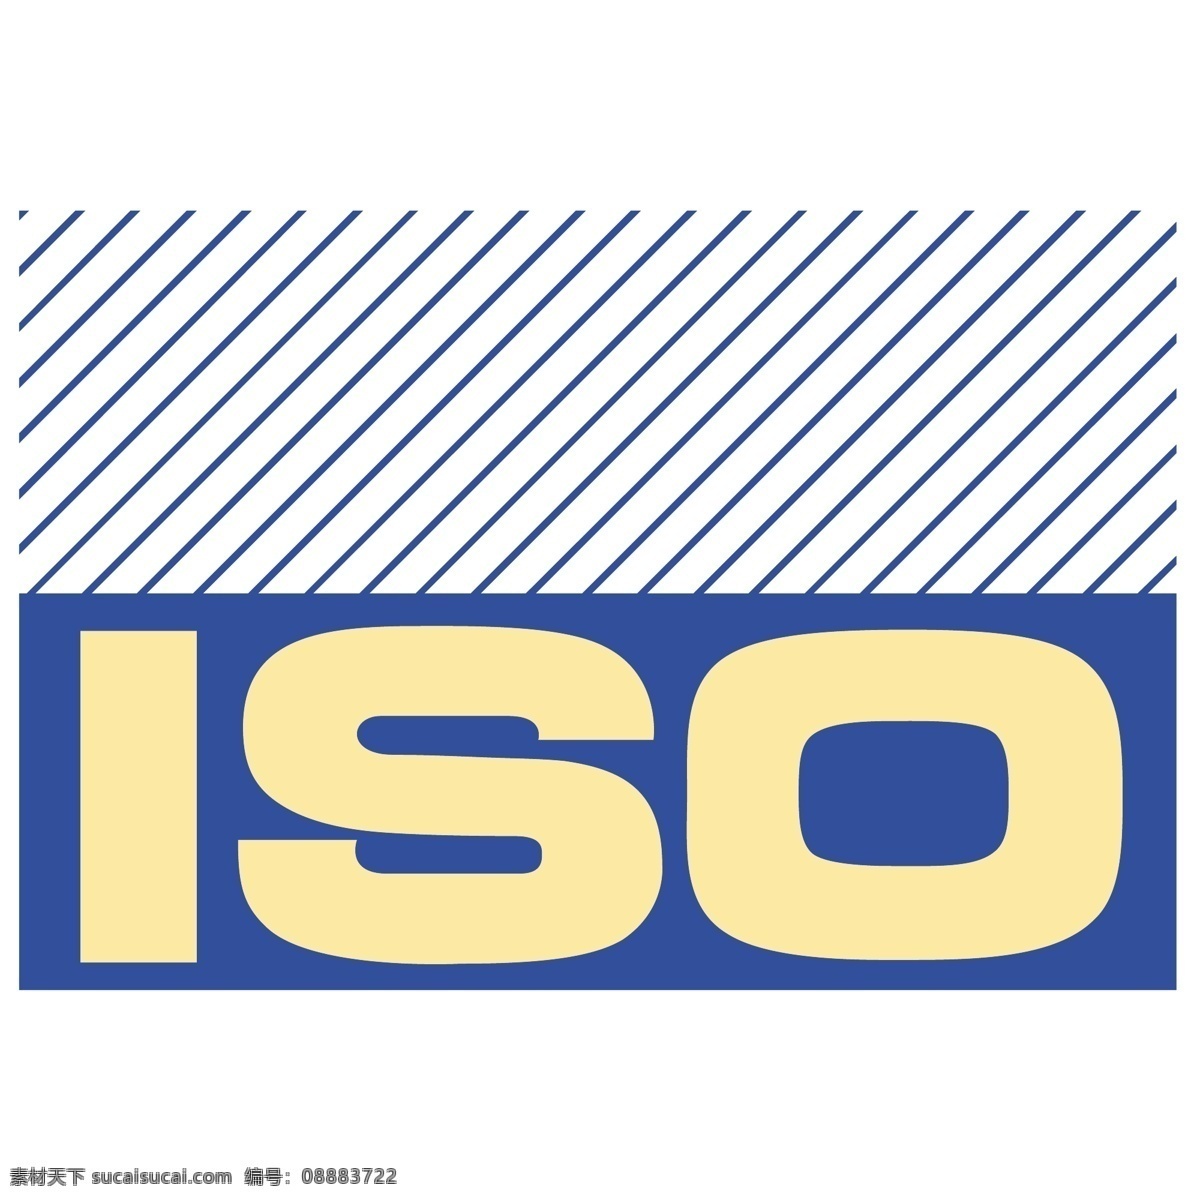 国际标准化组织 免费 iso 标志 白色